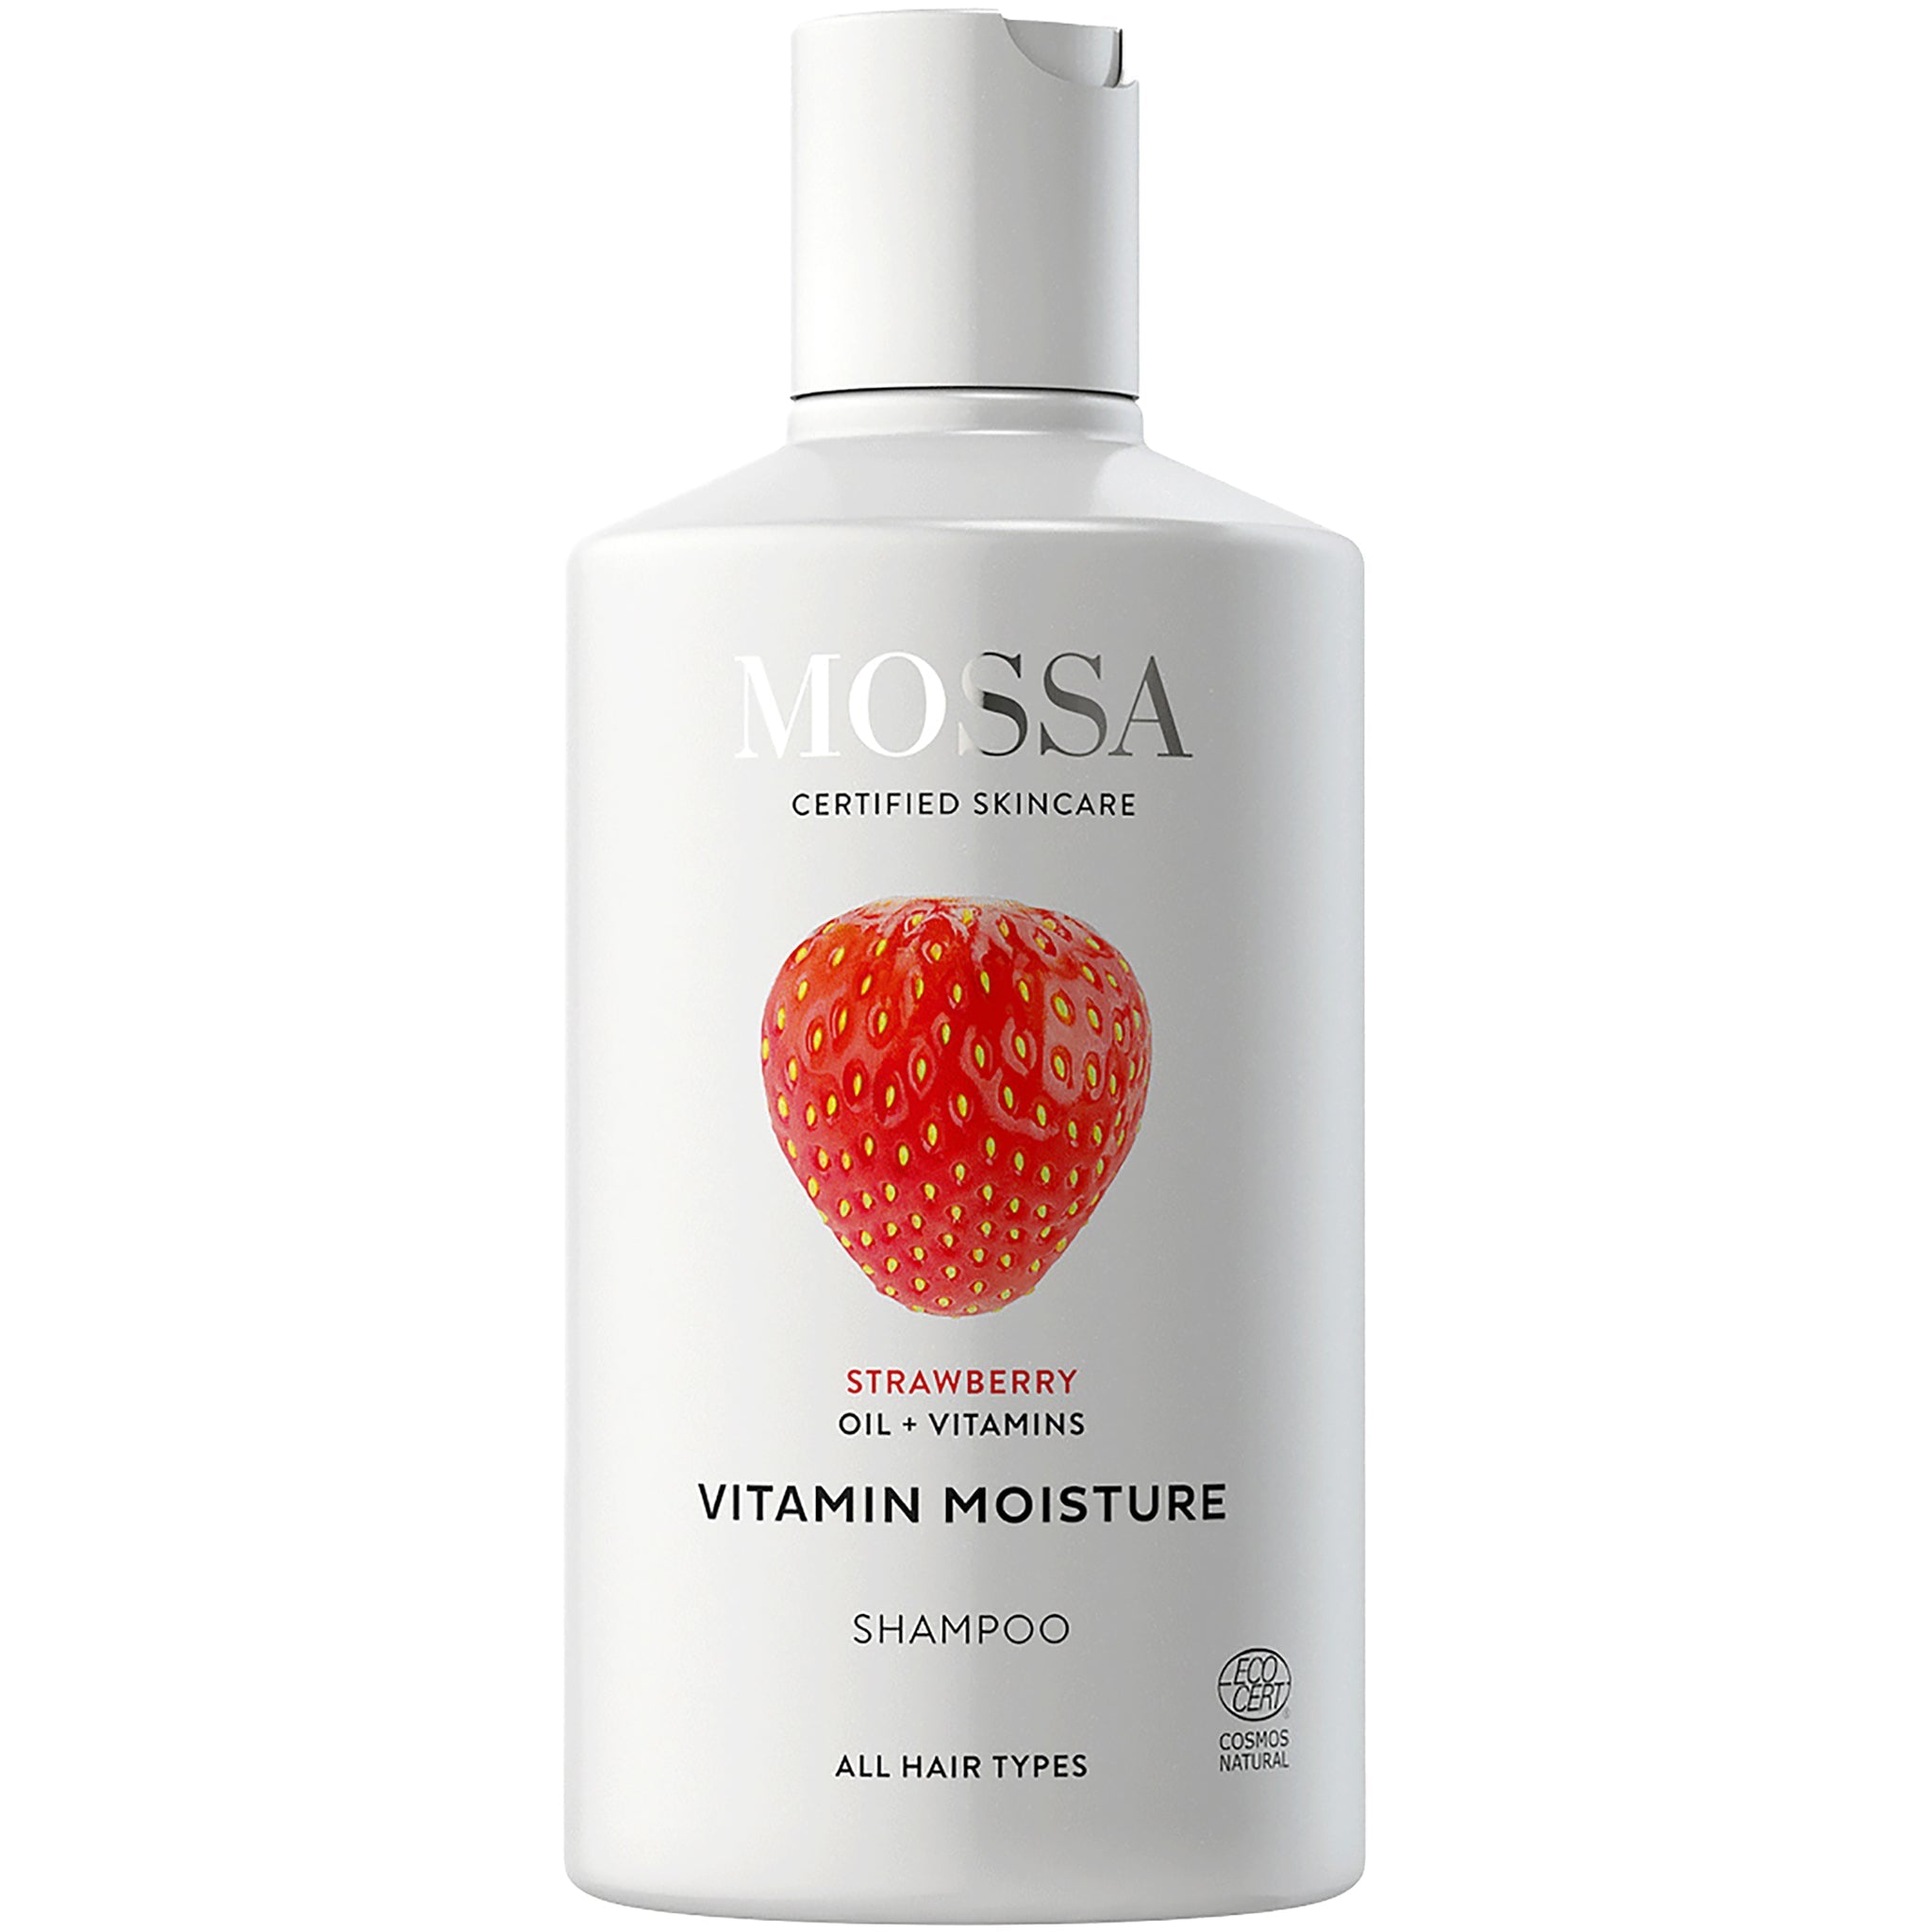 Vitamin Moisture Shampoo - mypure.co.uk